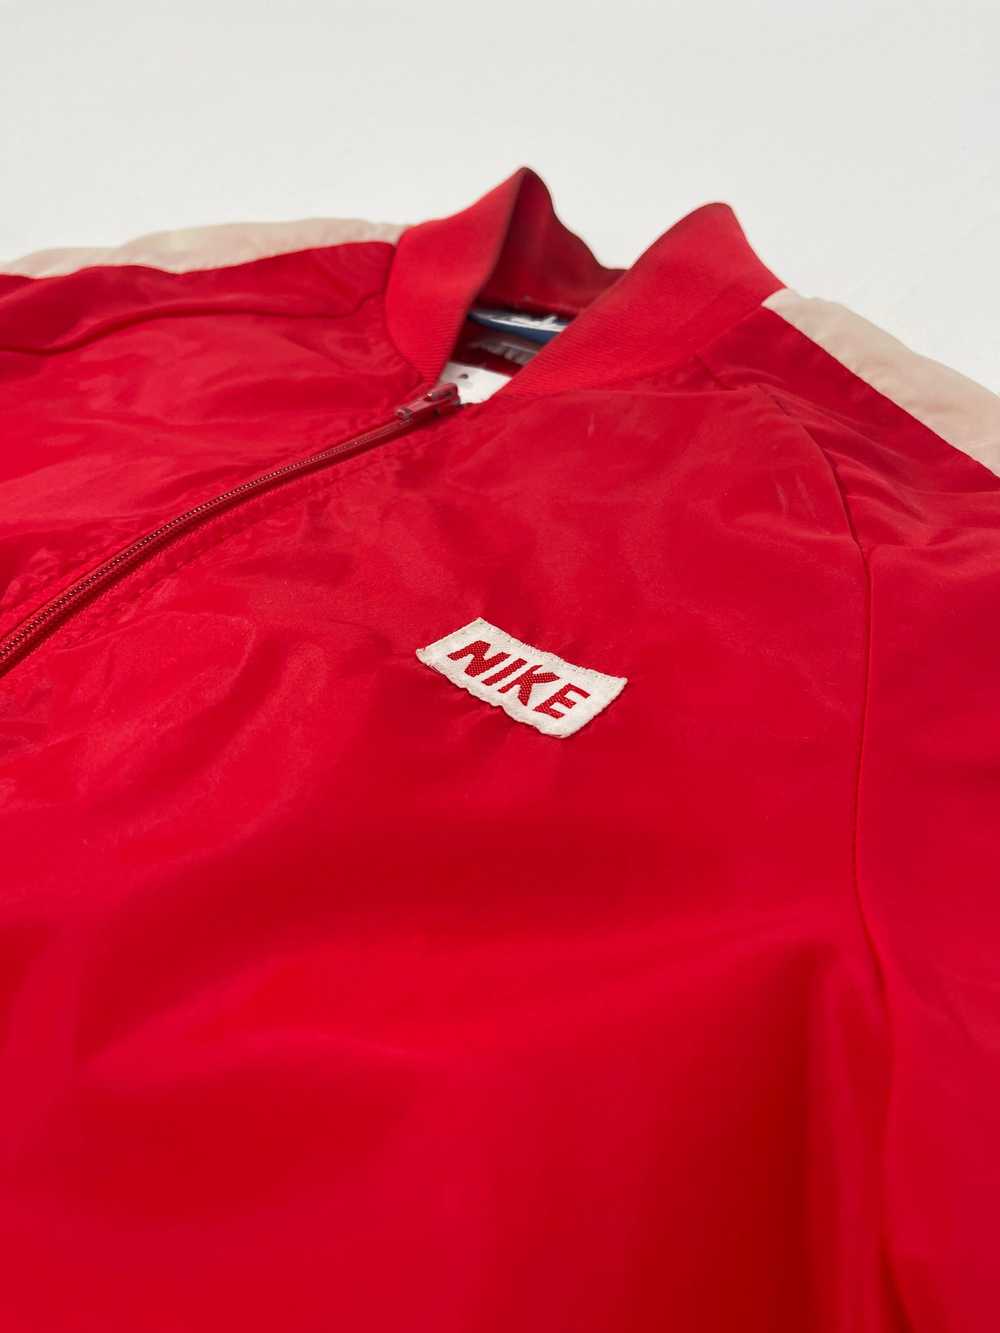 Vintage 80s Red Nike Windbreaker - image 4